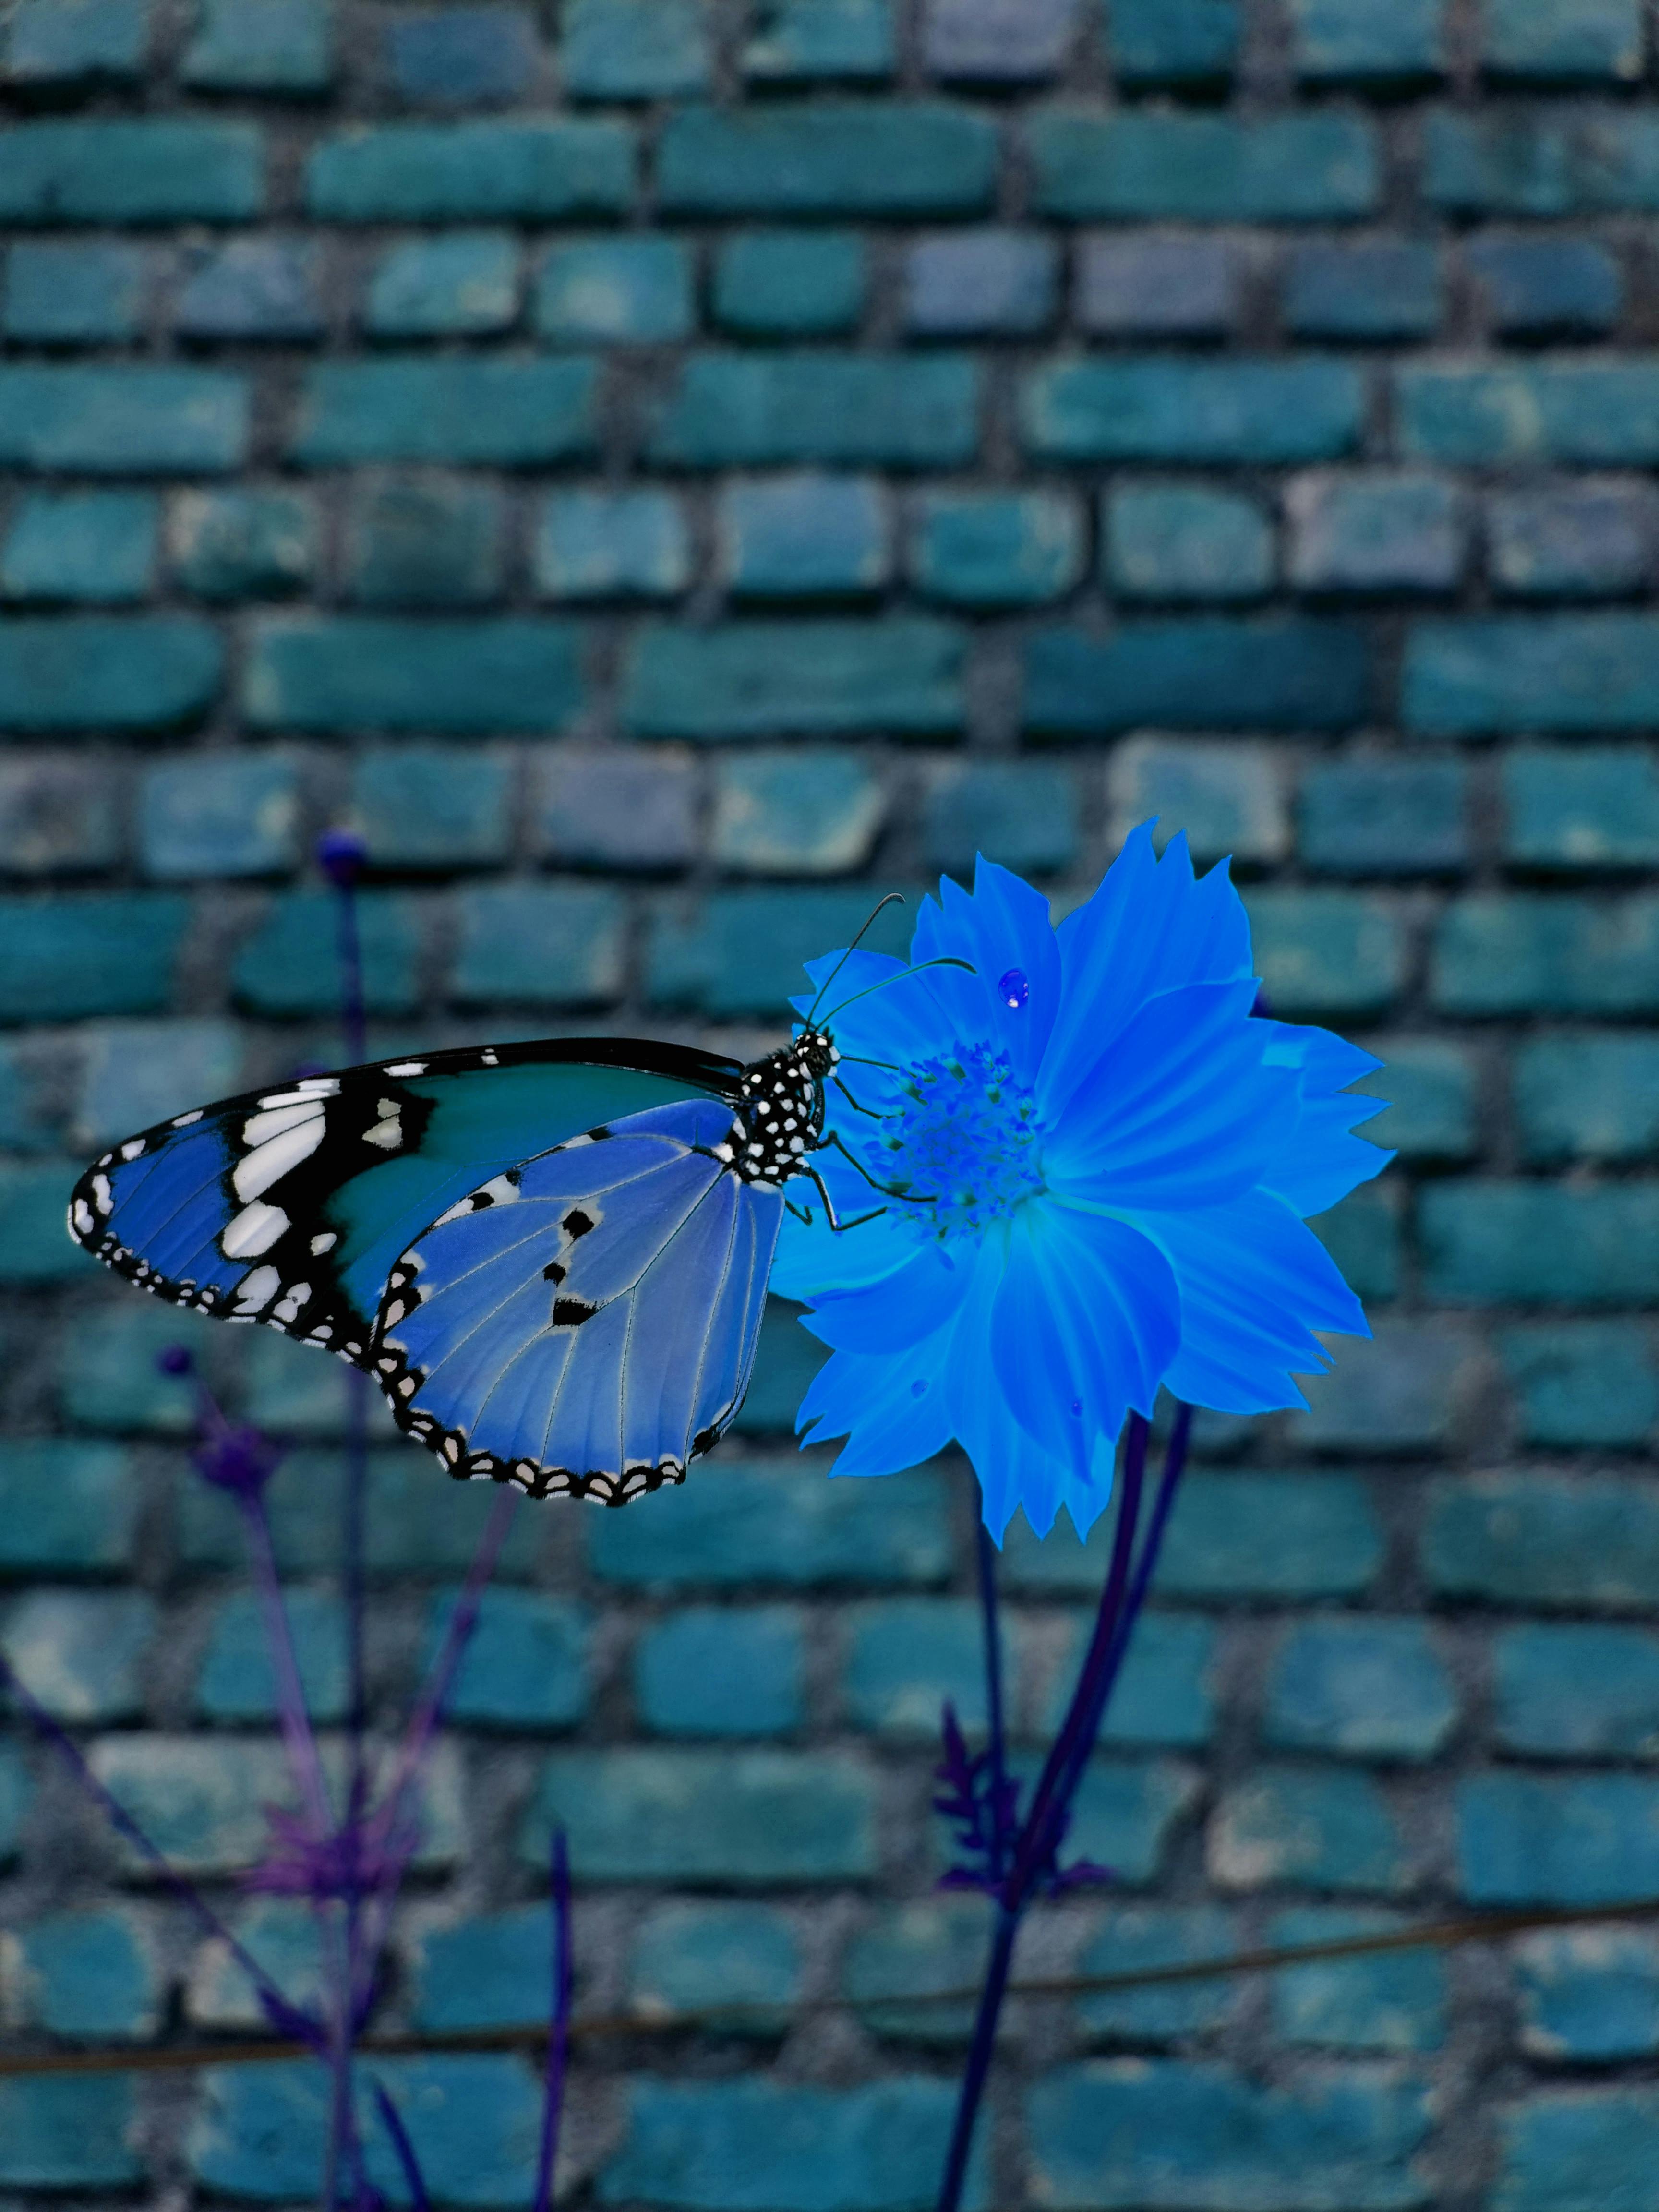 Free stock photo of blue butterfly, blue flowers, bokeh